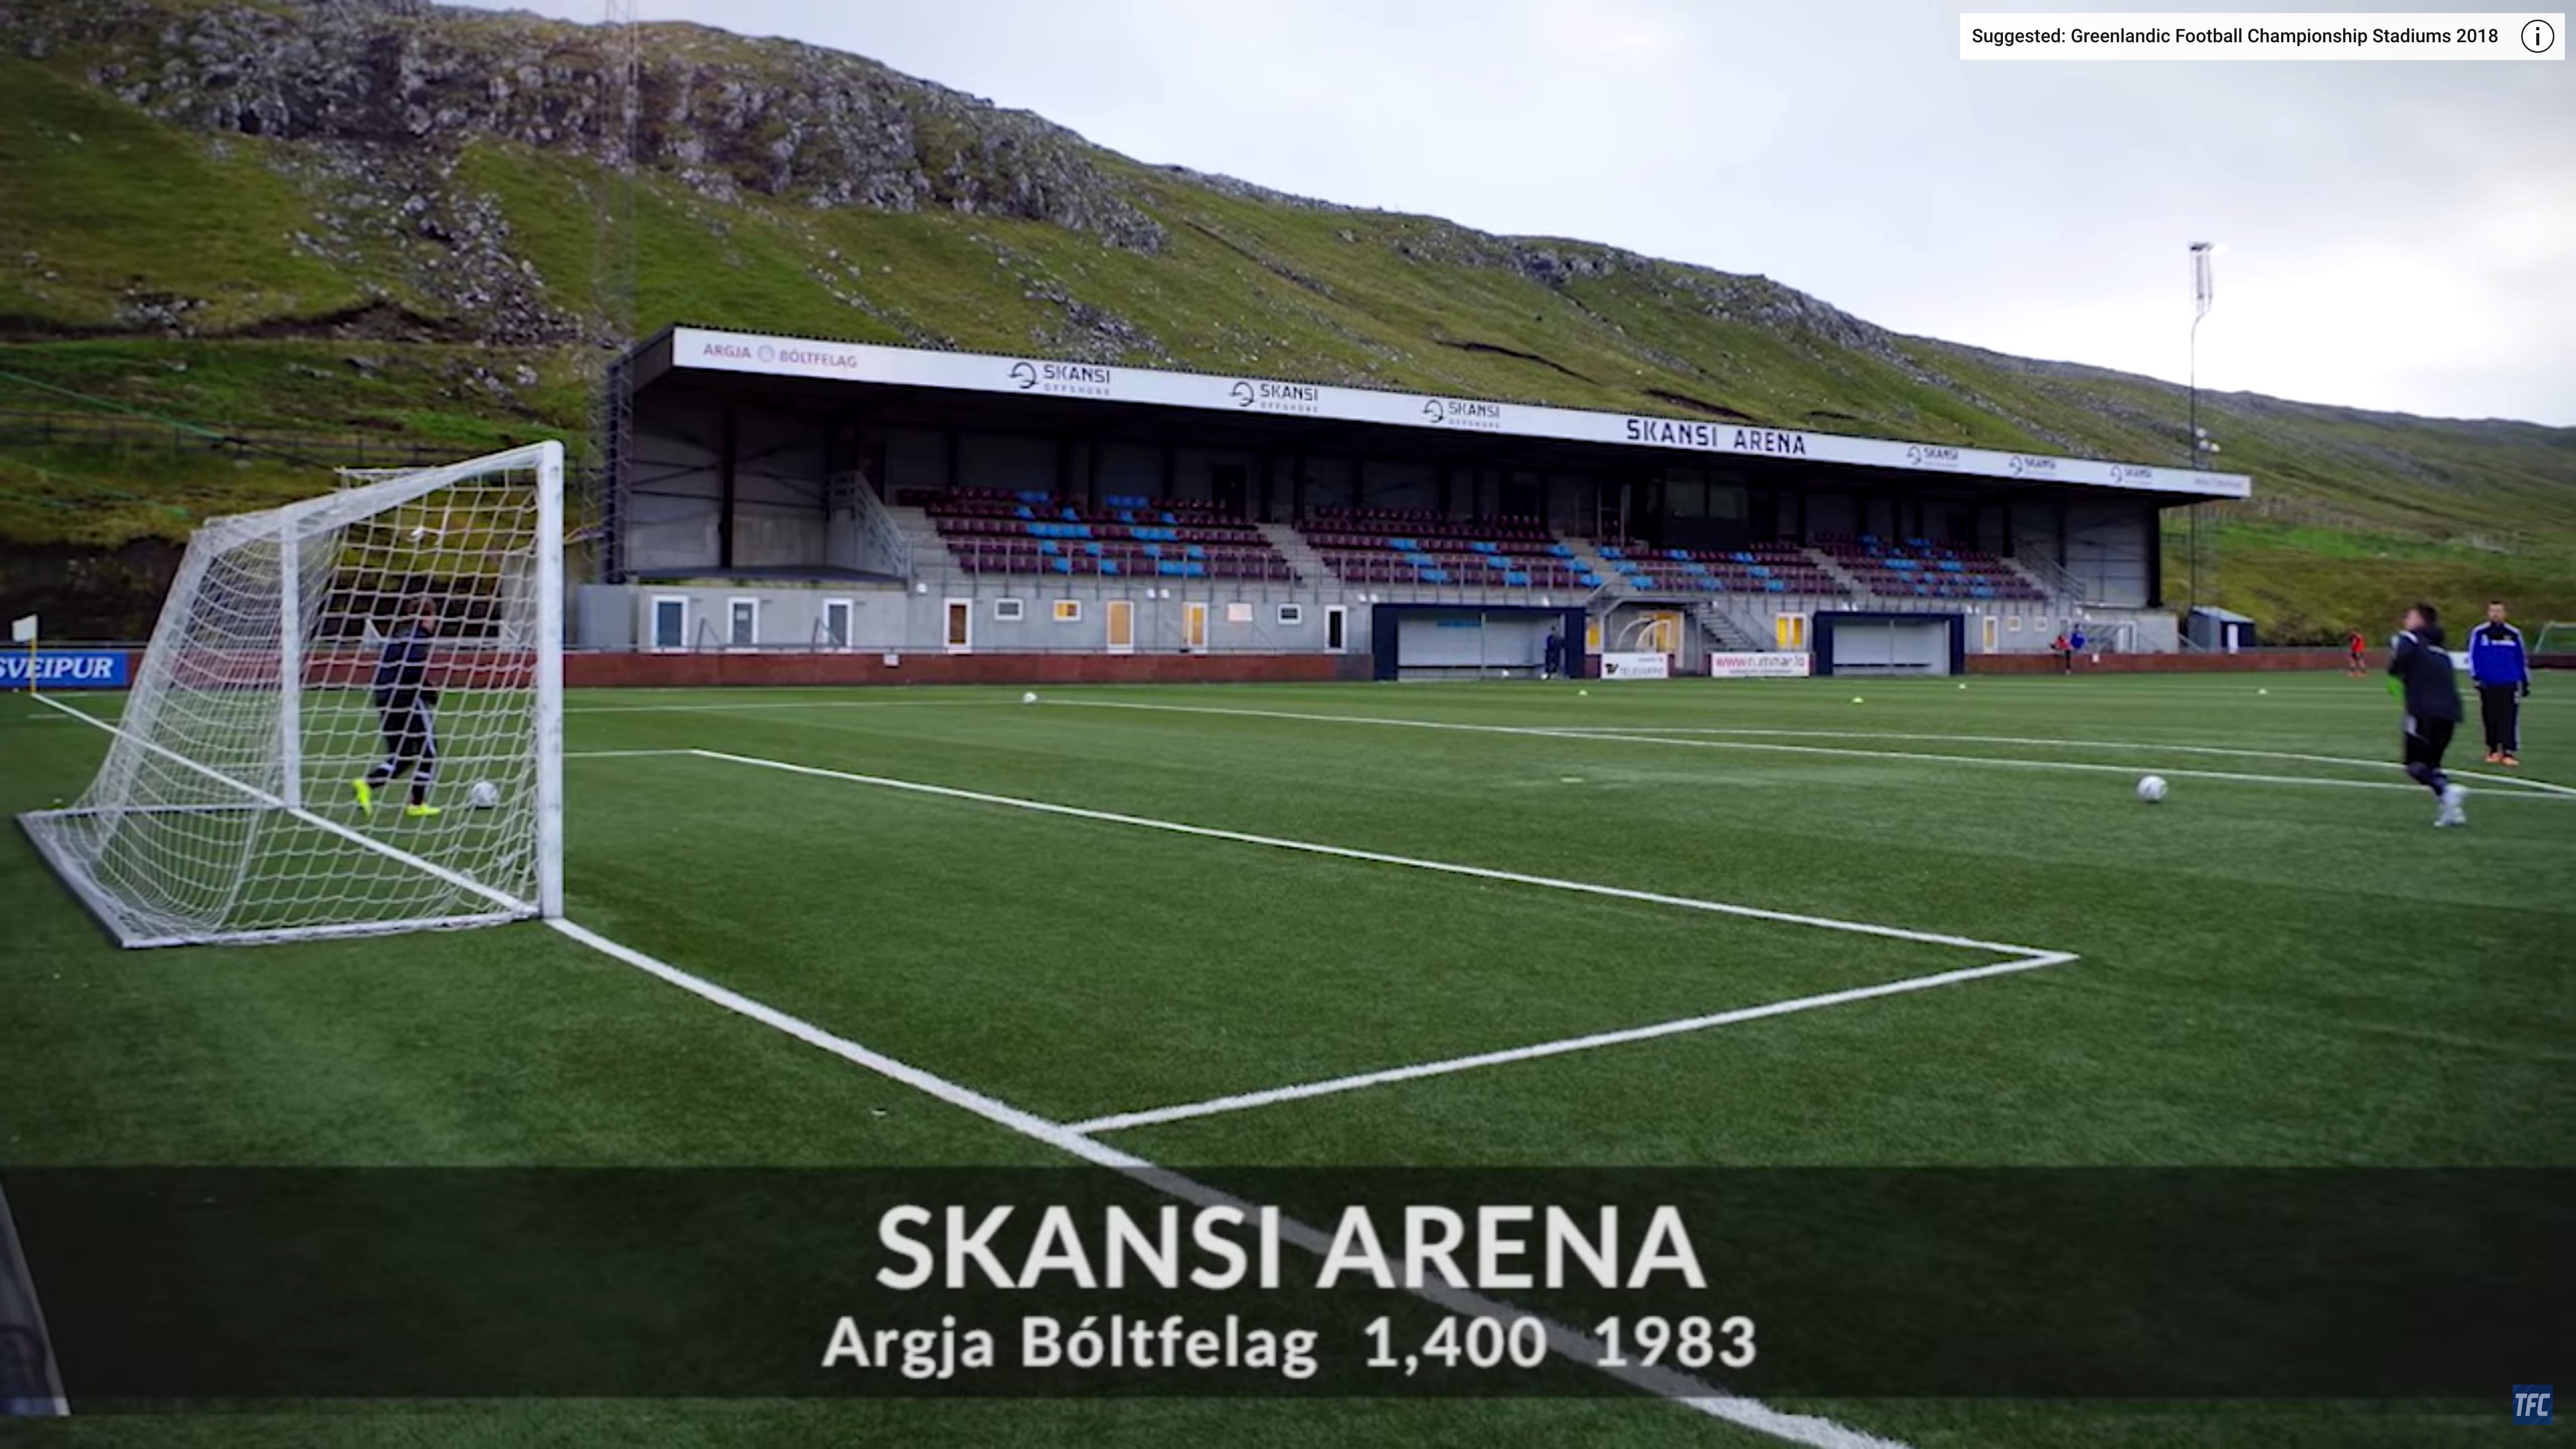 ARGJA BÓLTFELAG (AB) stadium from the Faroe Islands Premier League